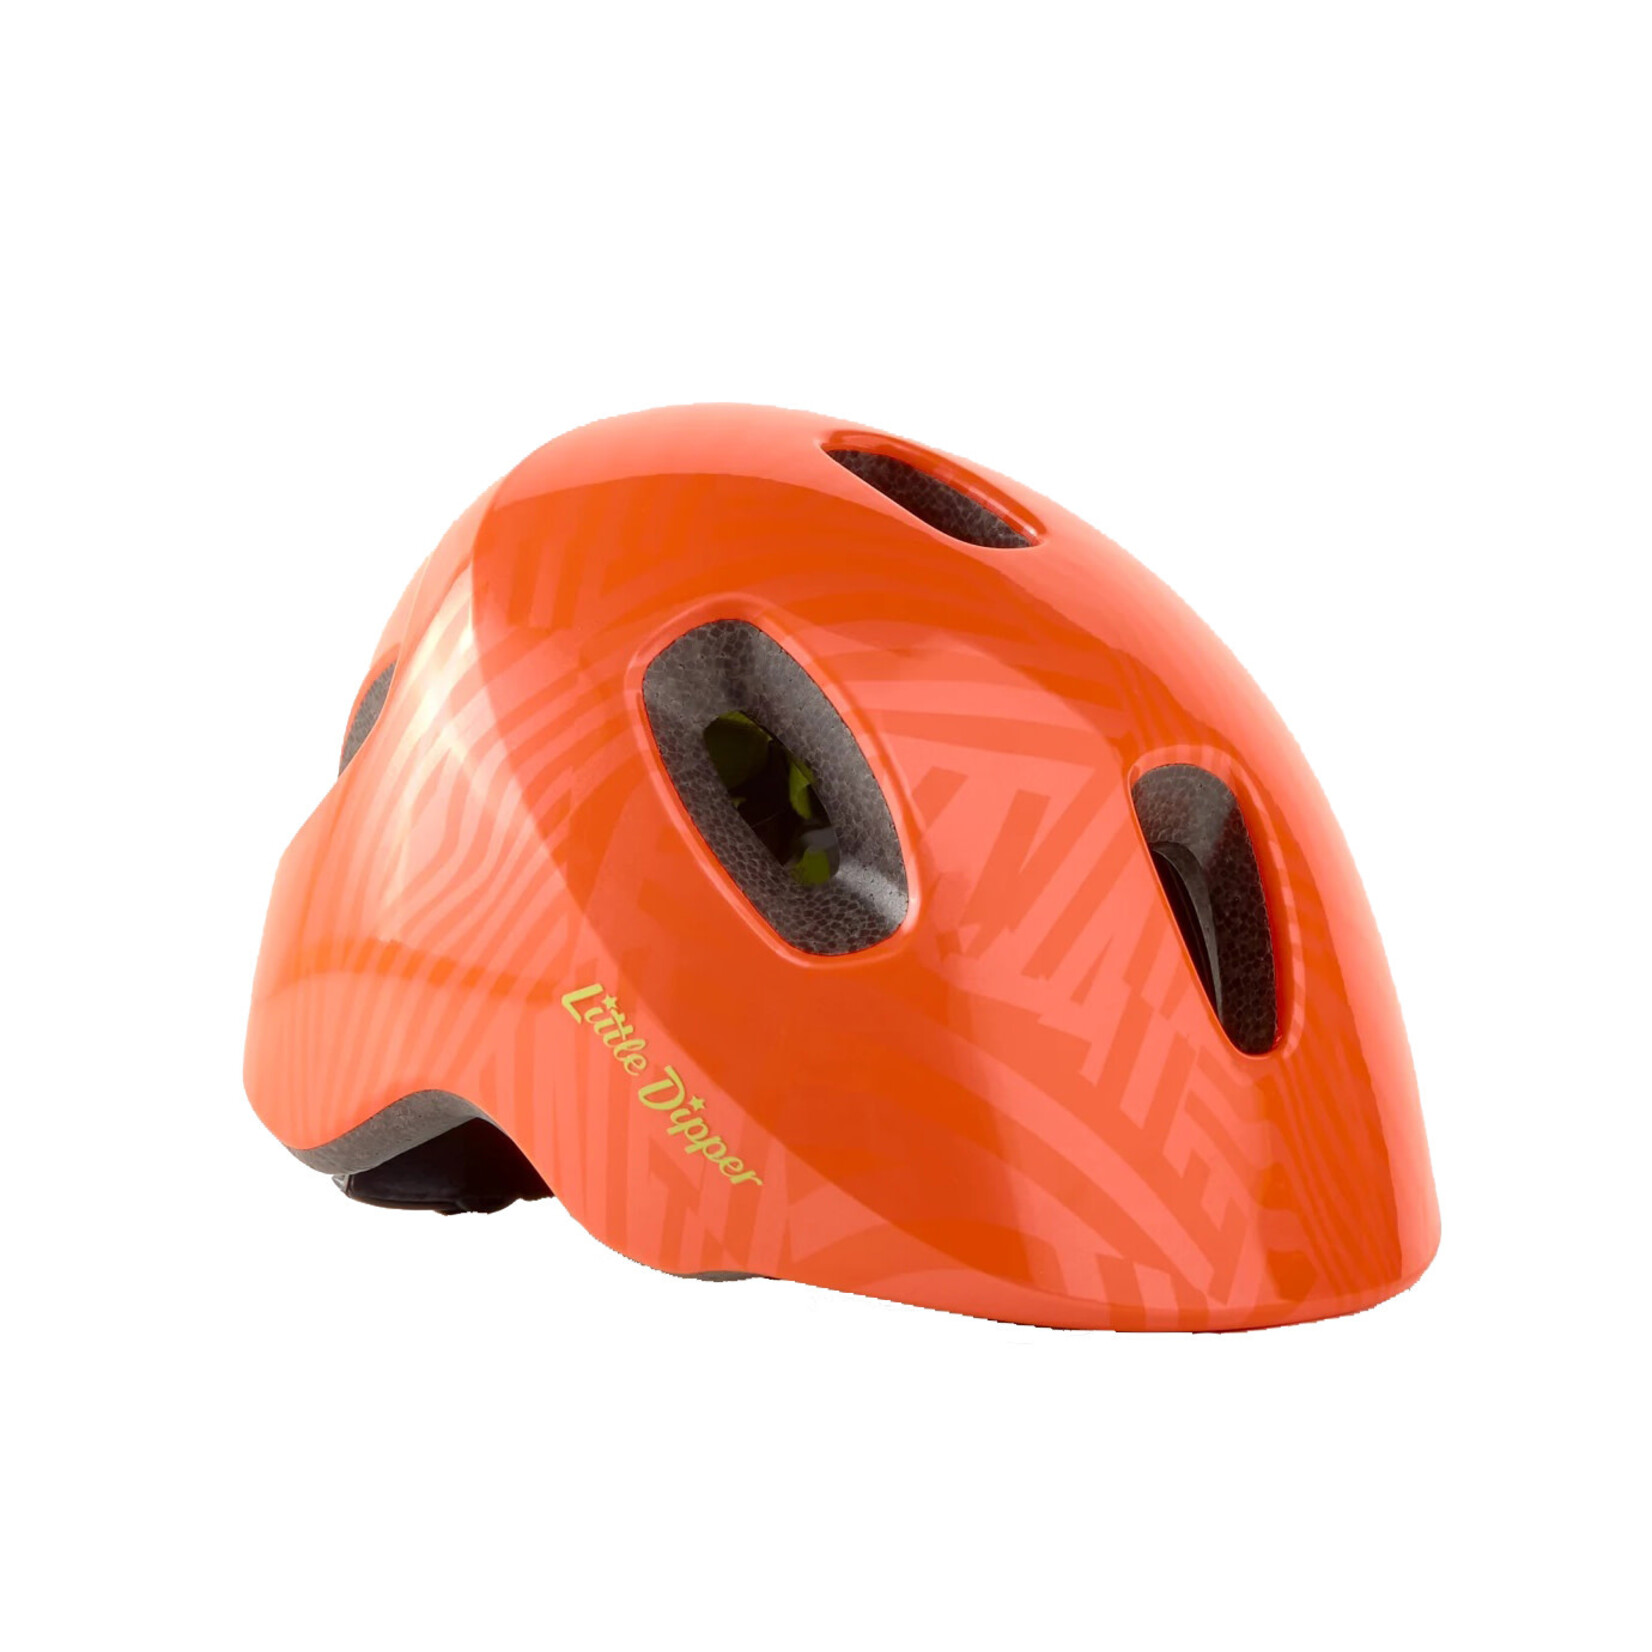 BONTRAGER Bontrager Little Dipper MIPS Children's Bike Helmet, 46-50cm